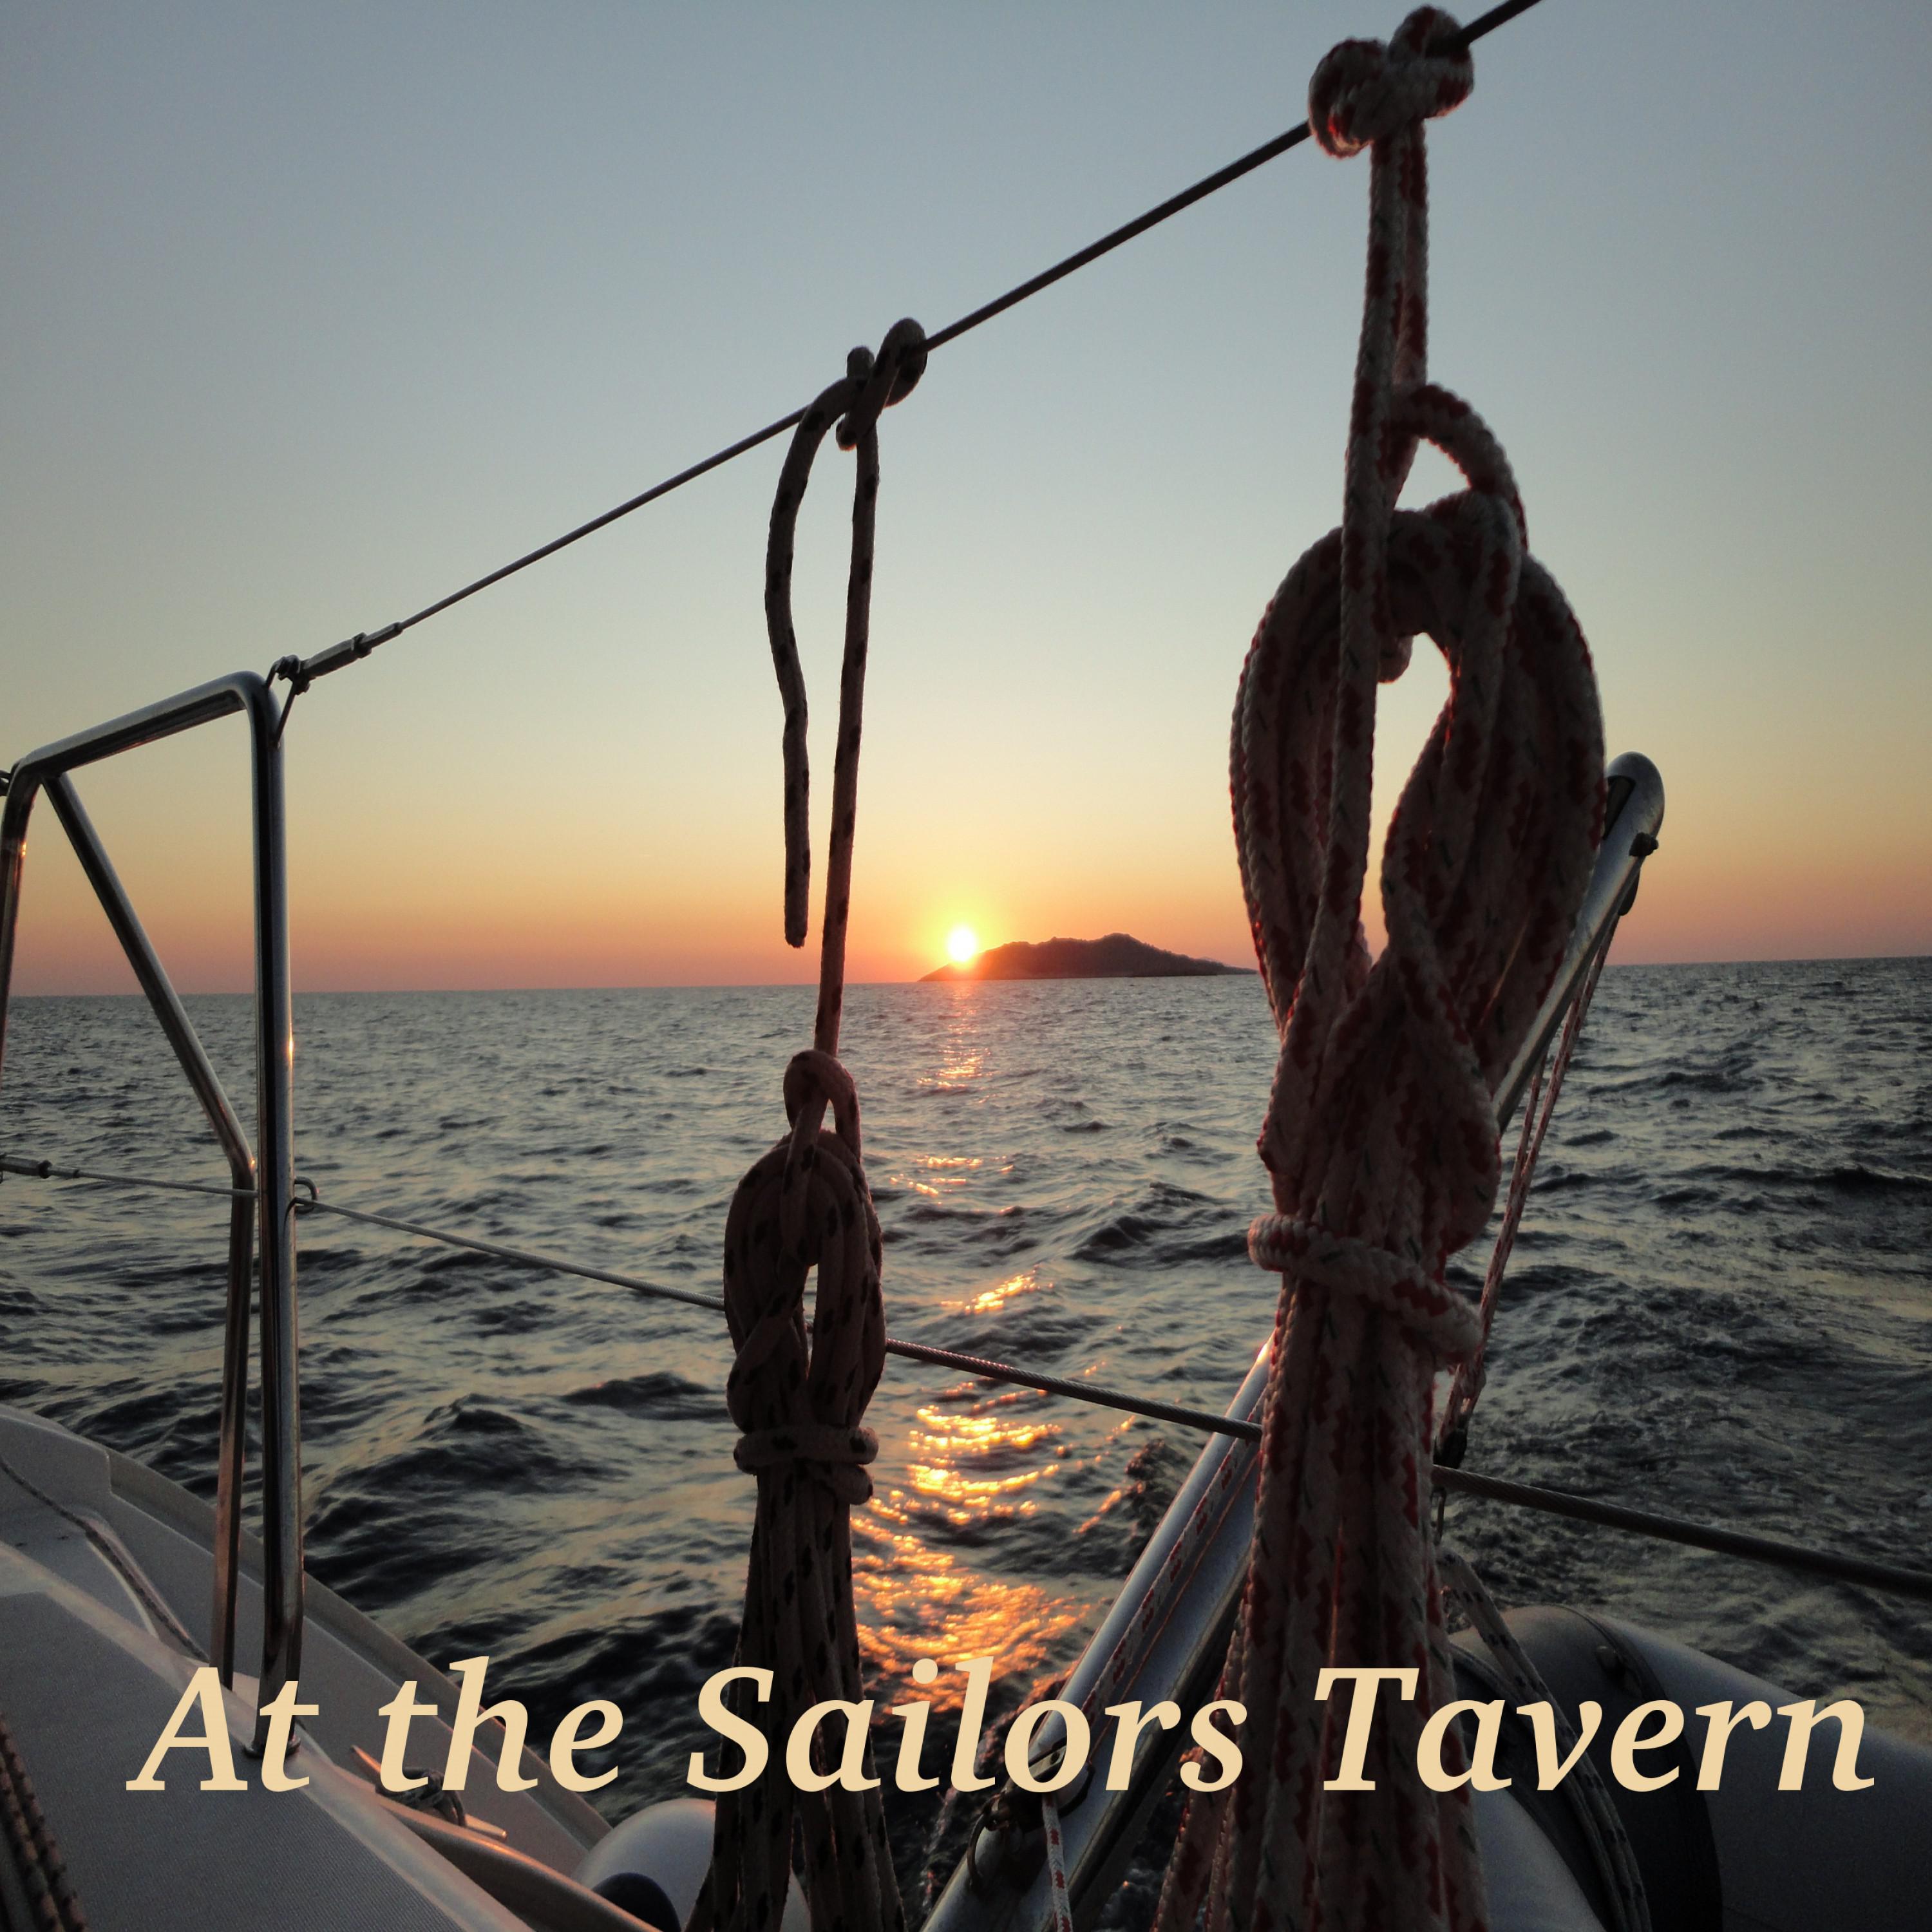 At the Sailors Tavern